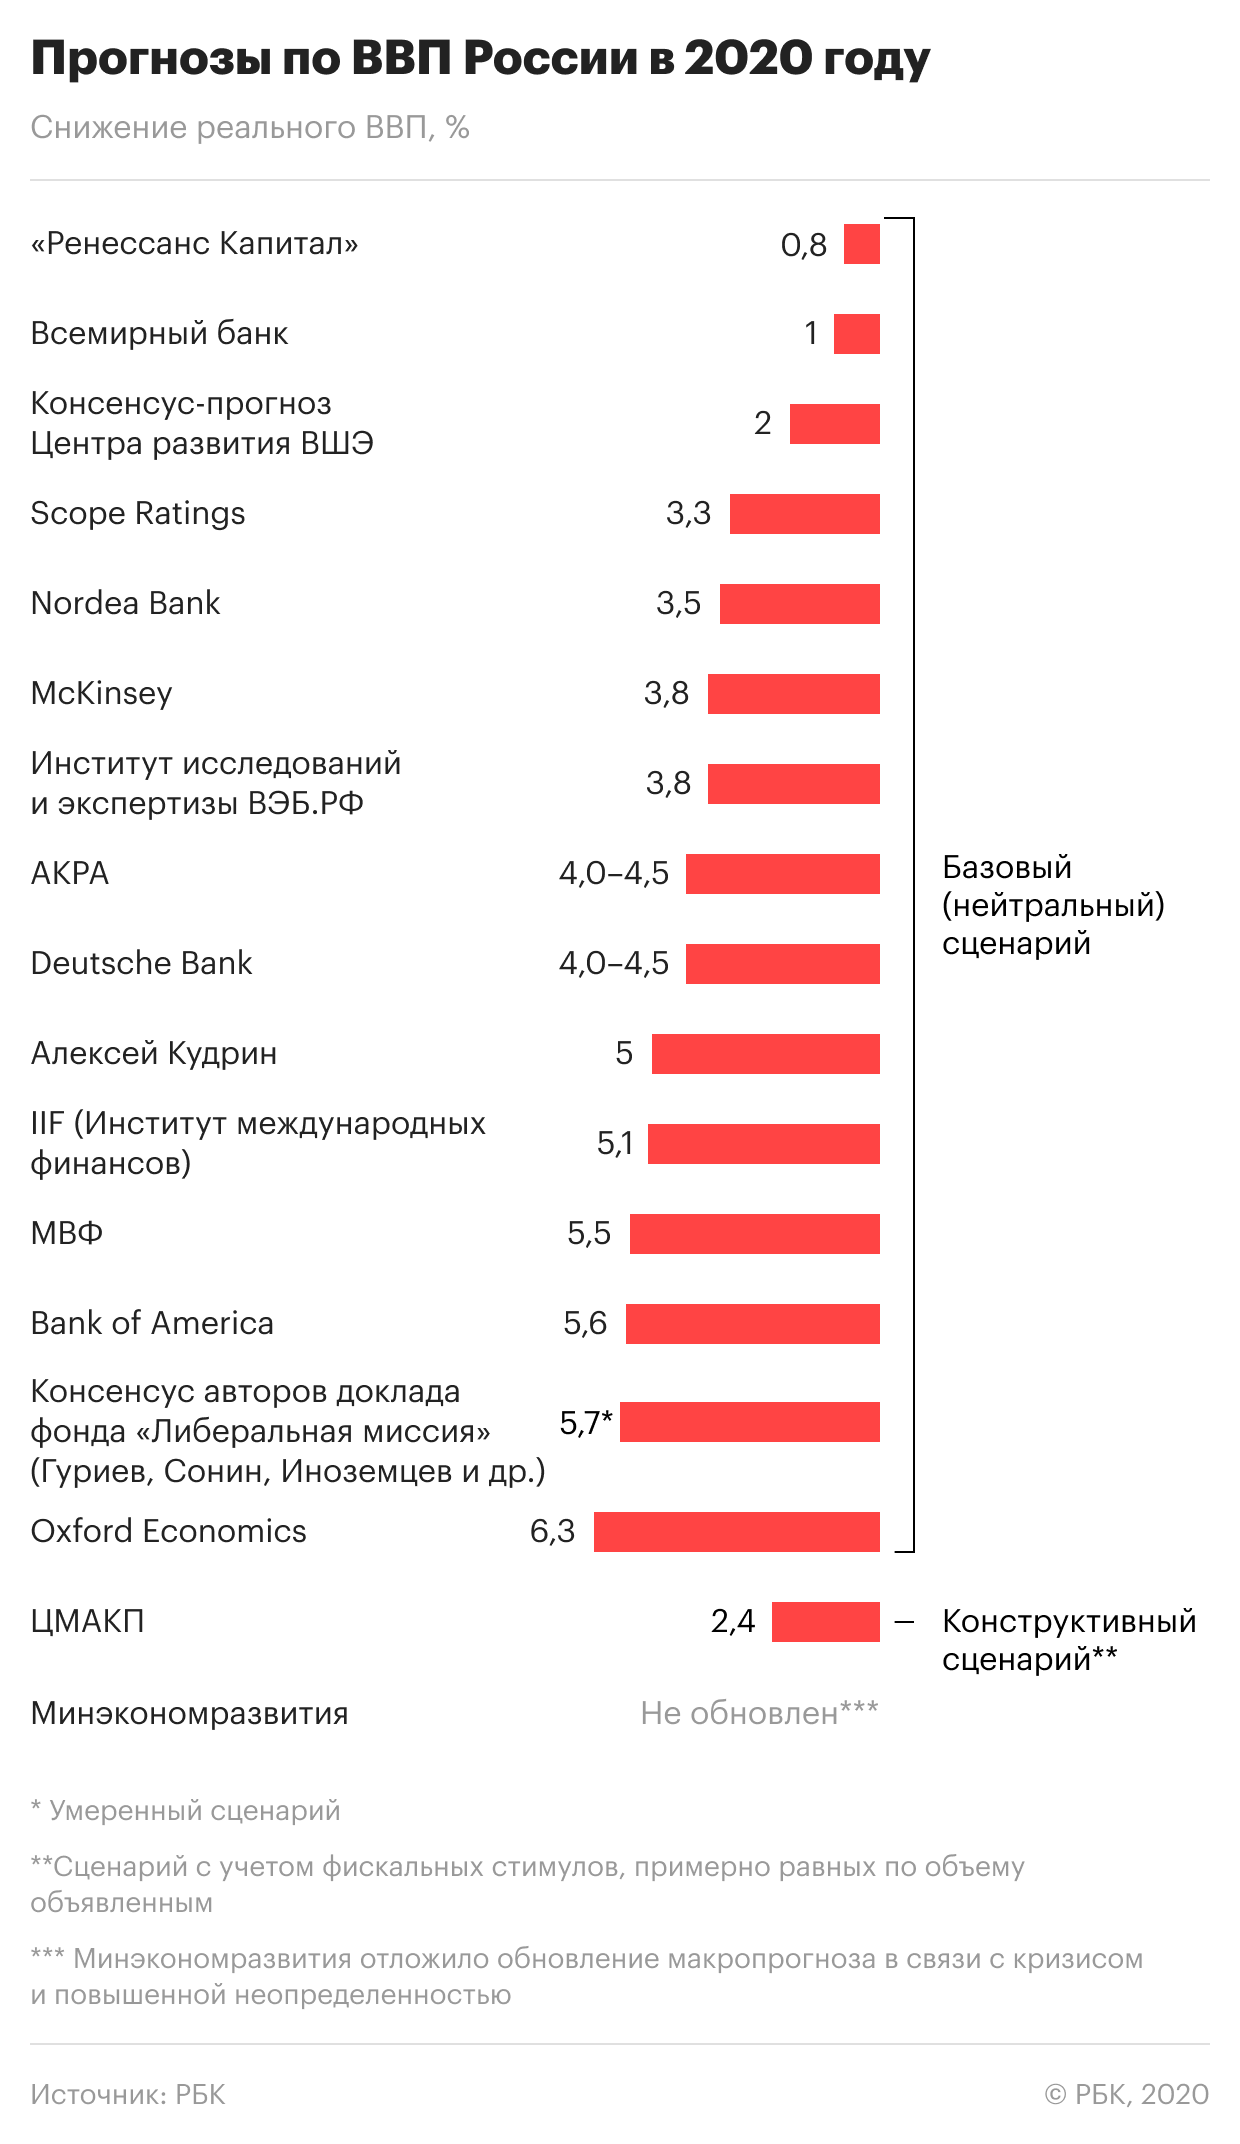 ЦБ подготовил первый официальный прогноз падения ВВП России в 2020 году